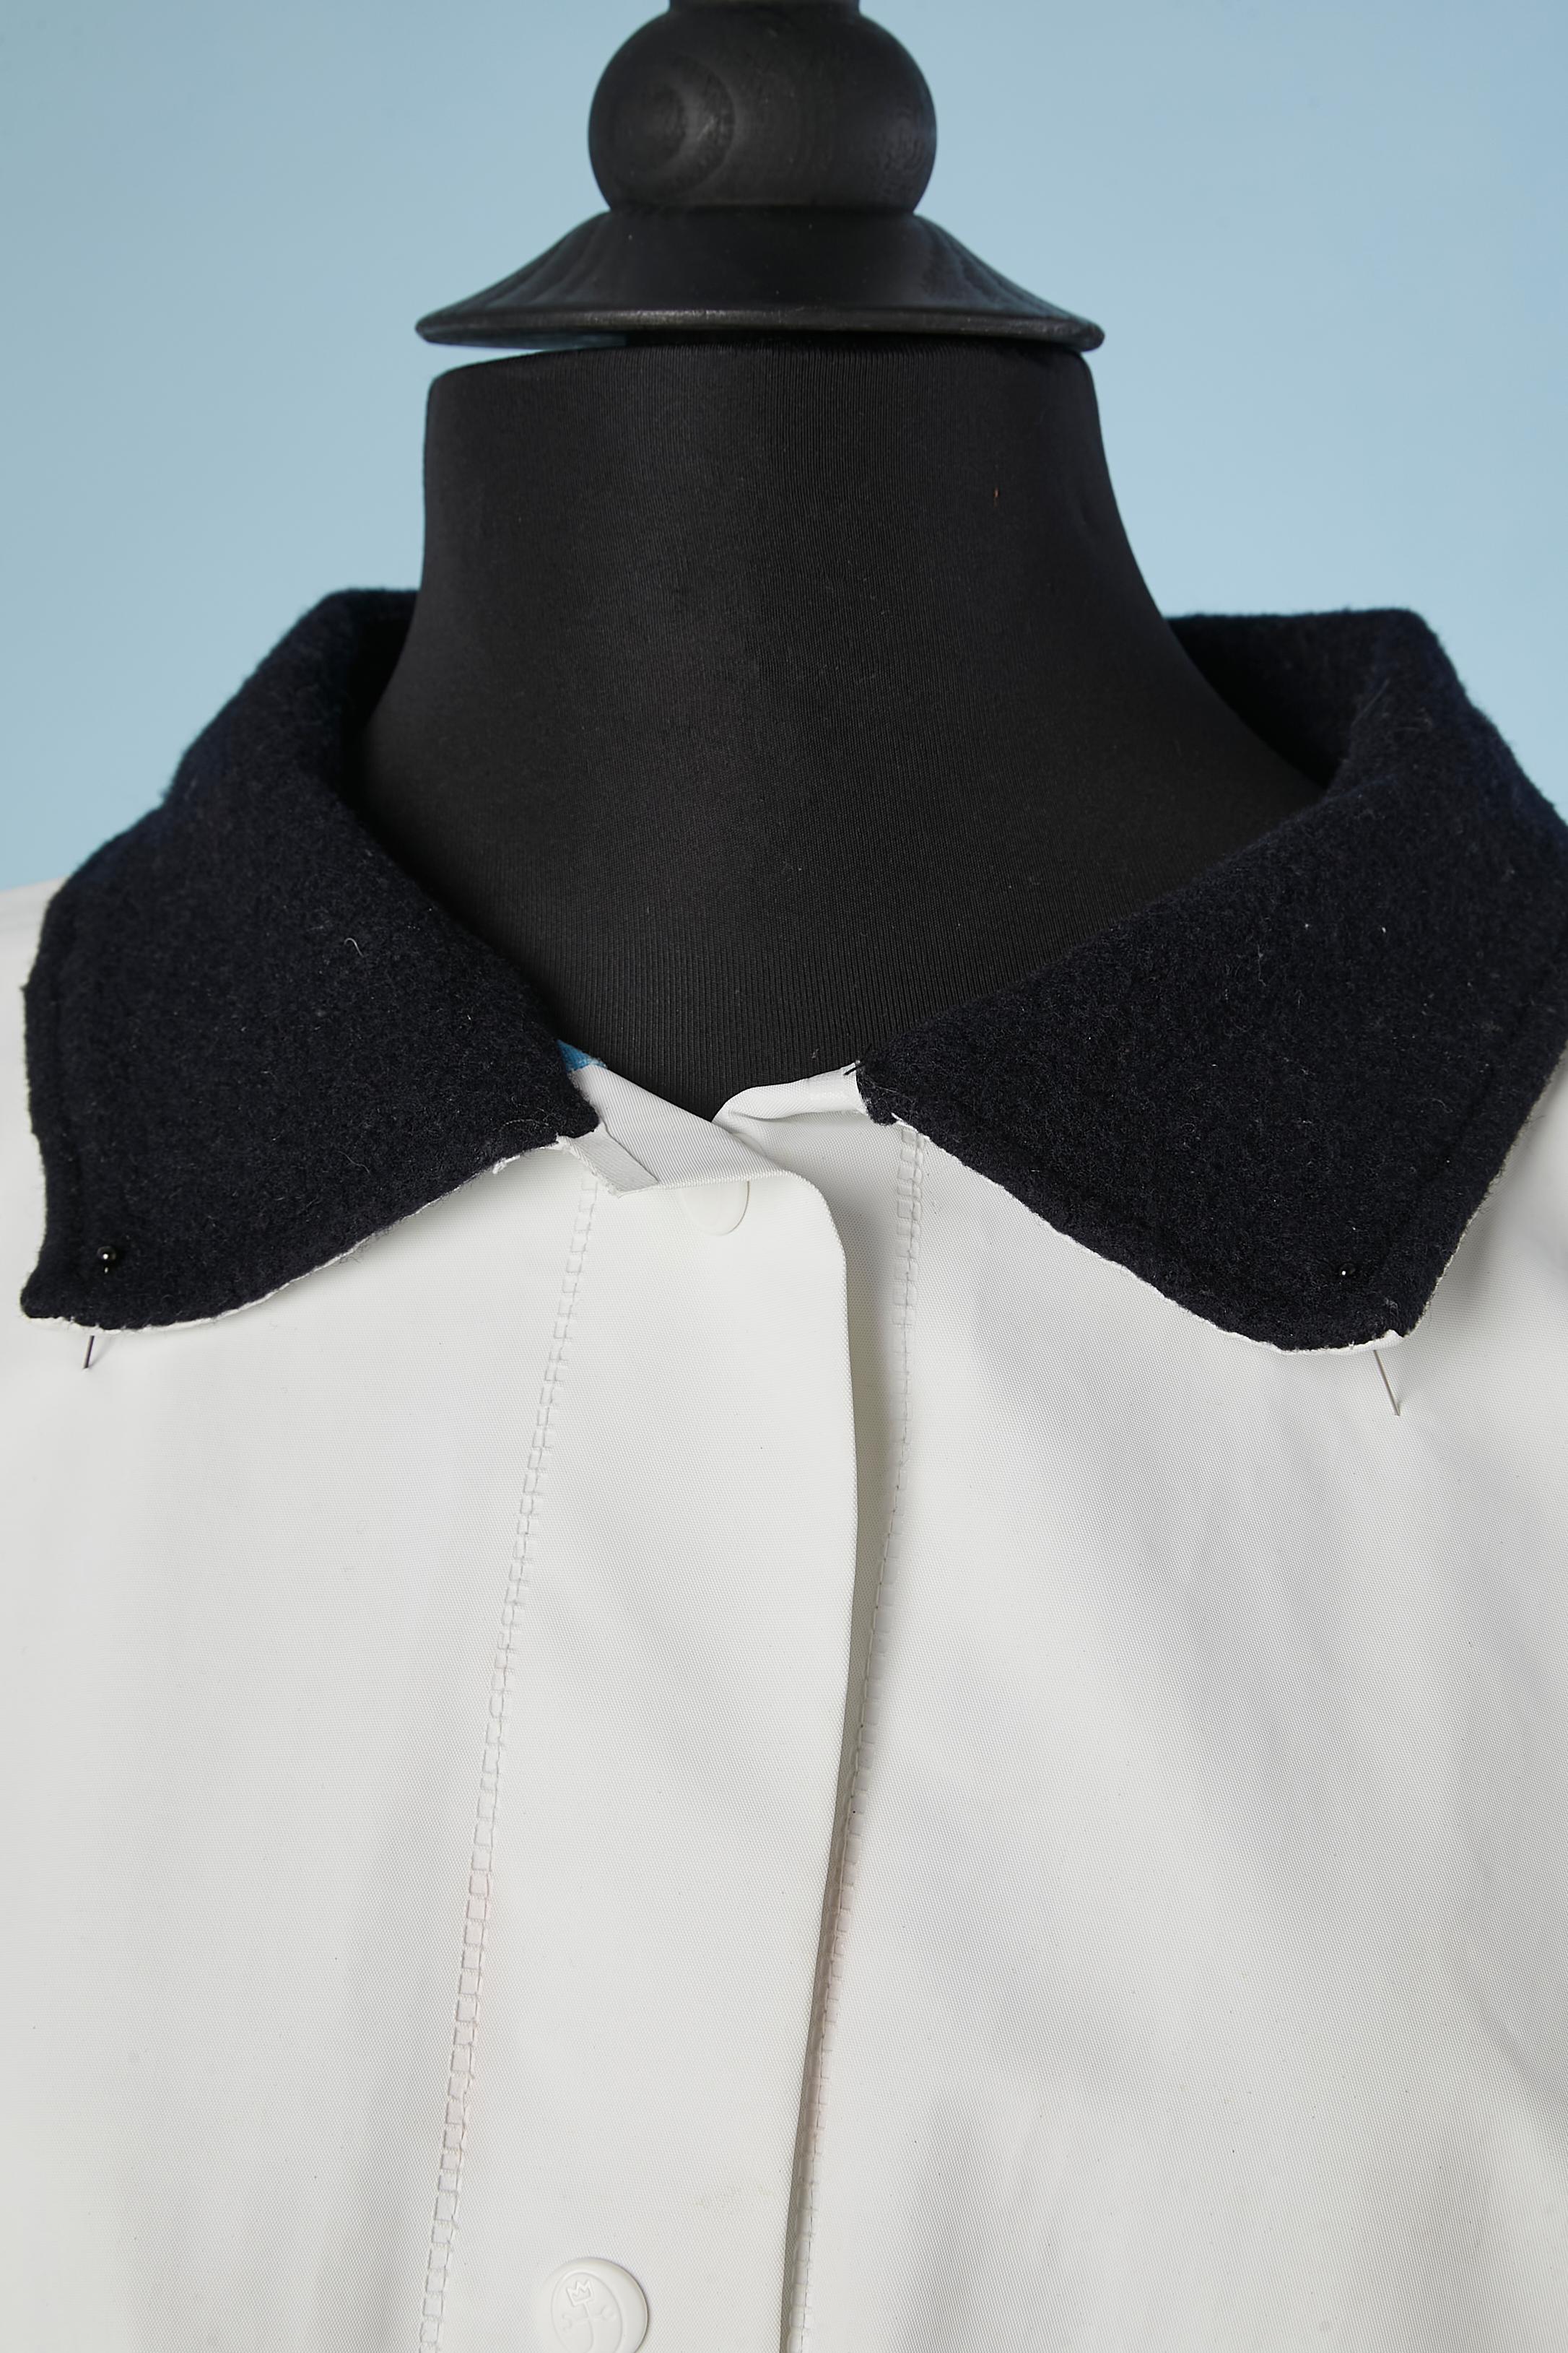 Imperméable en PVC blanc avec col en laine et doublure en coton imprimé. Bouton-pression de la marque, poches zippées. 
TAILLE L